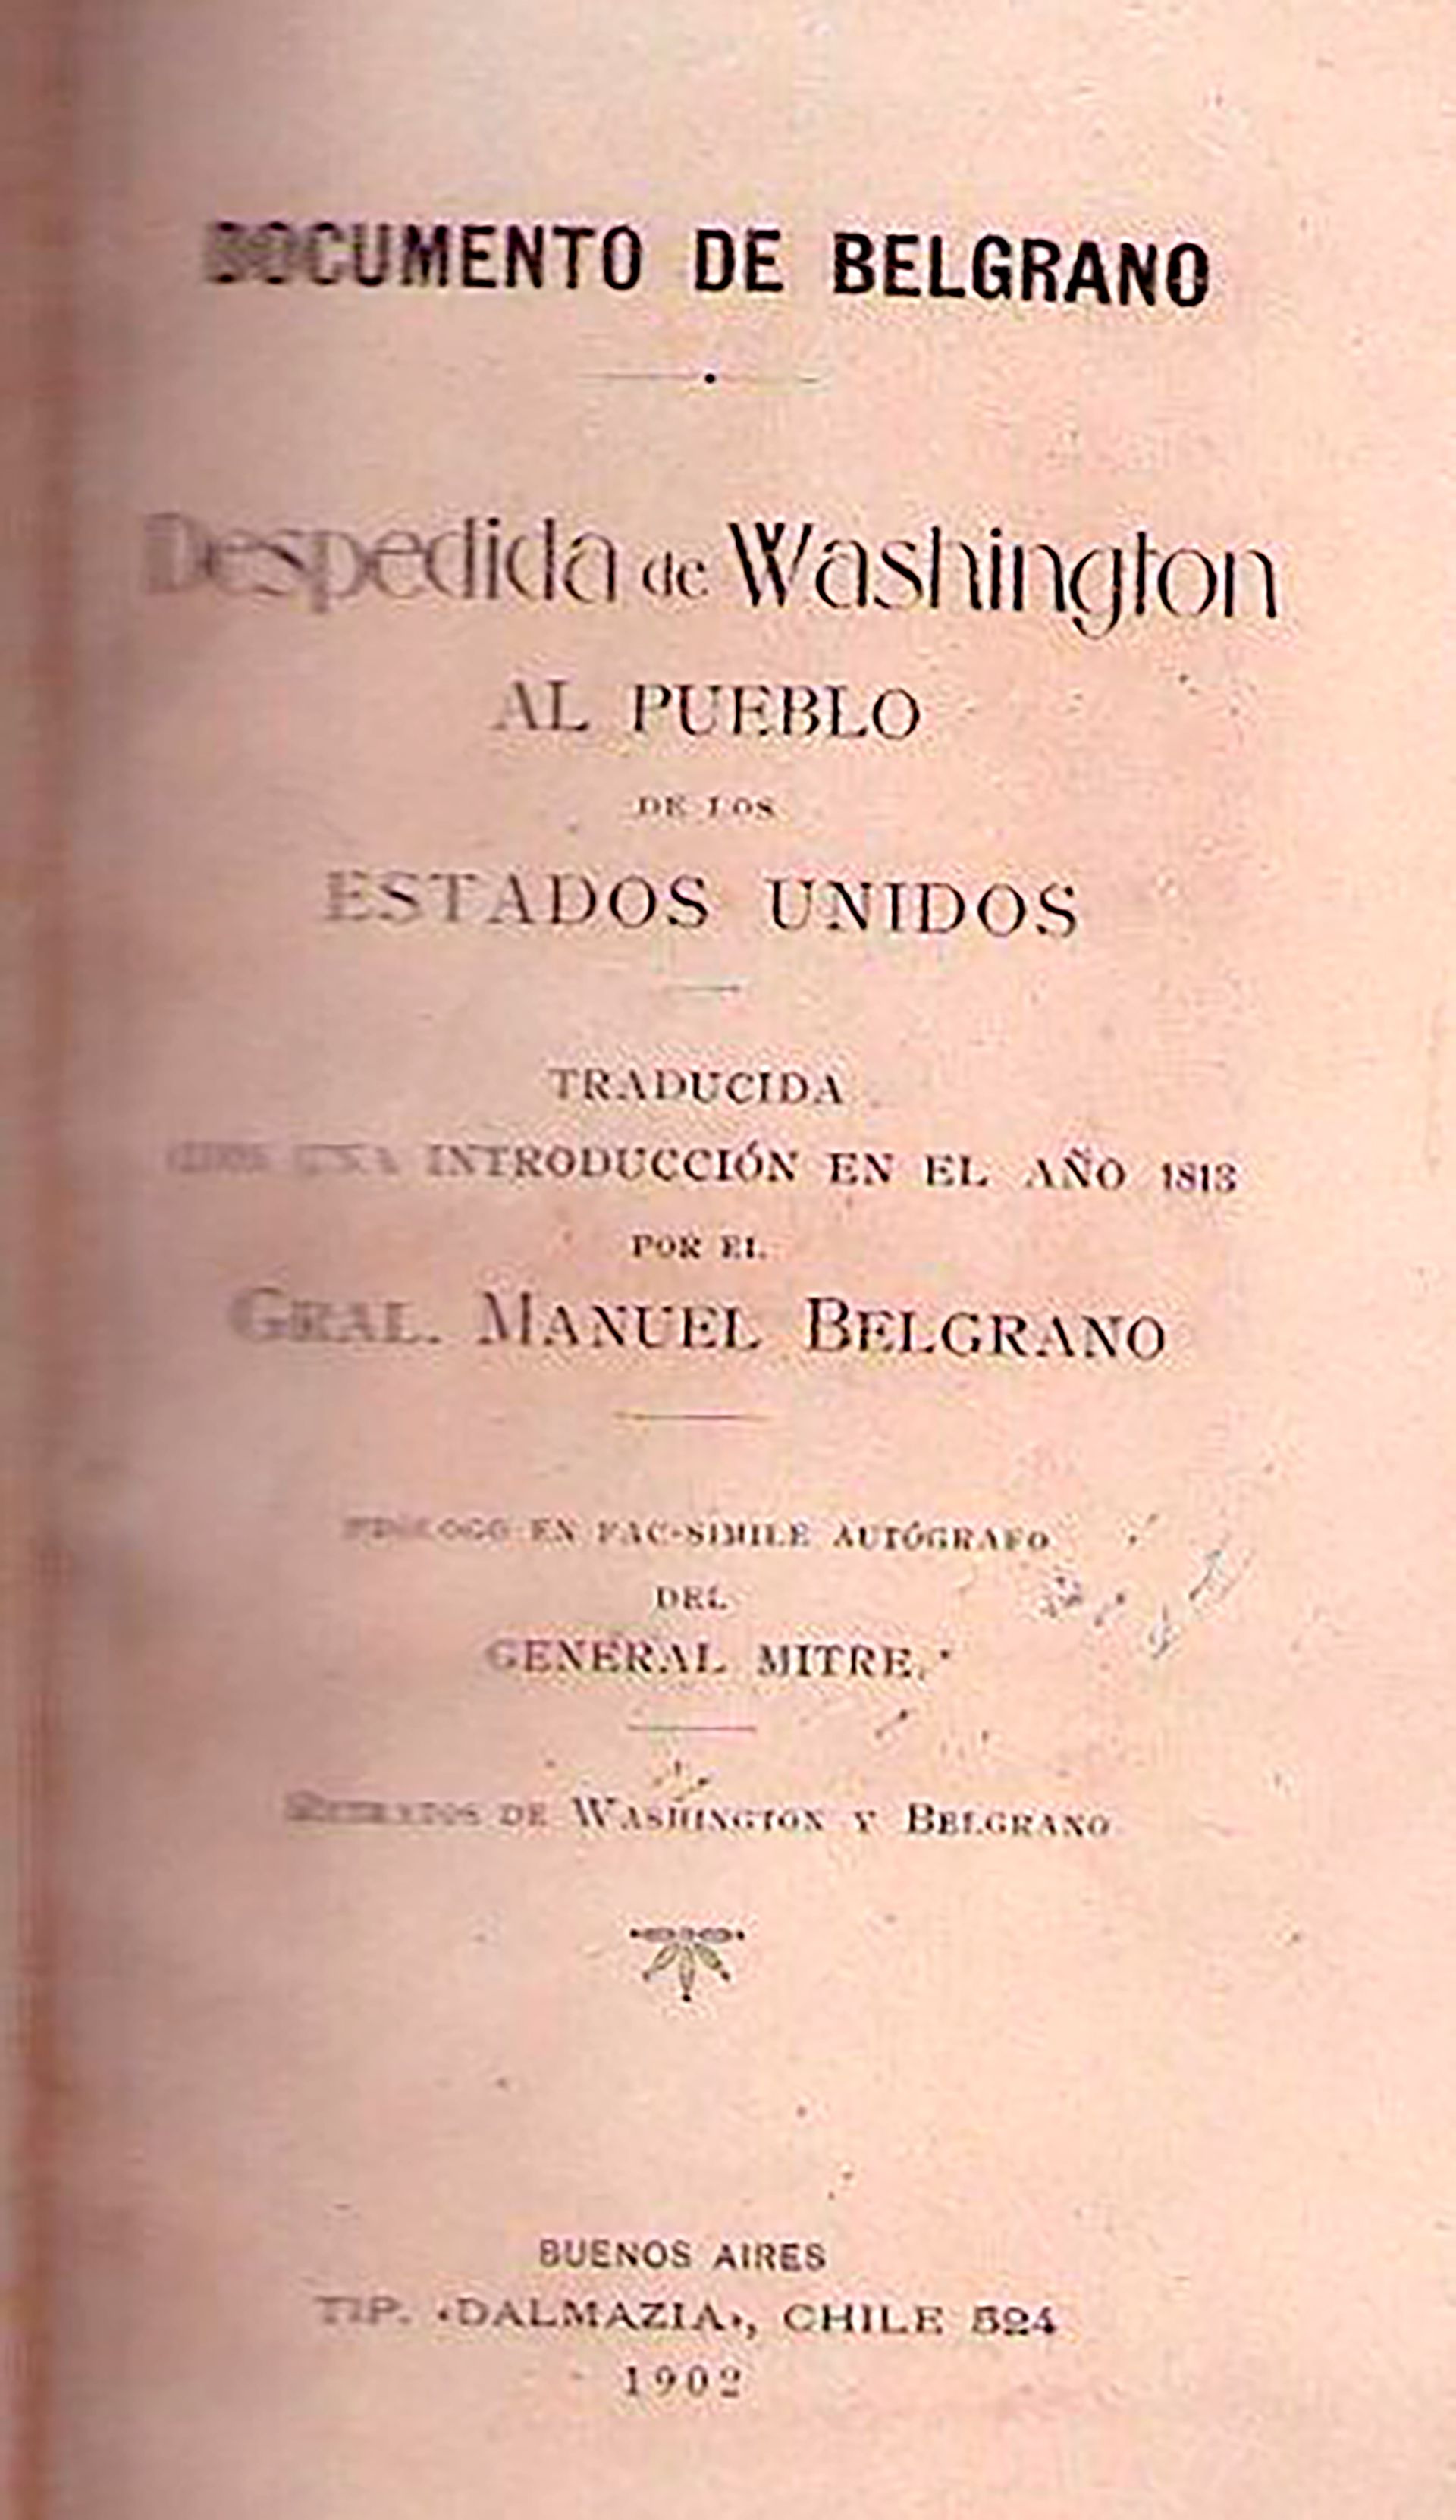 Manuel Belgrano traductor de Washington